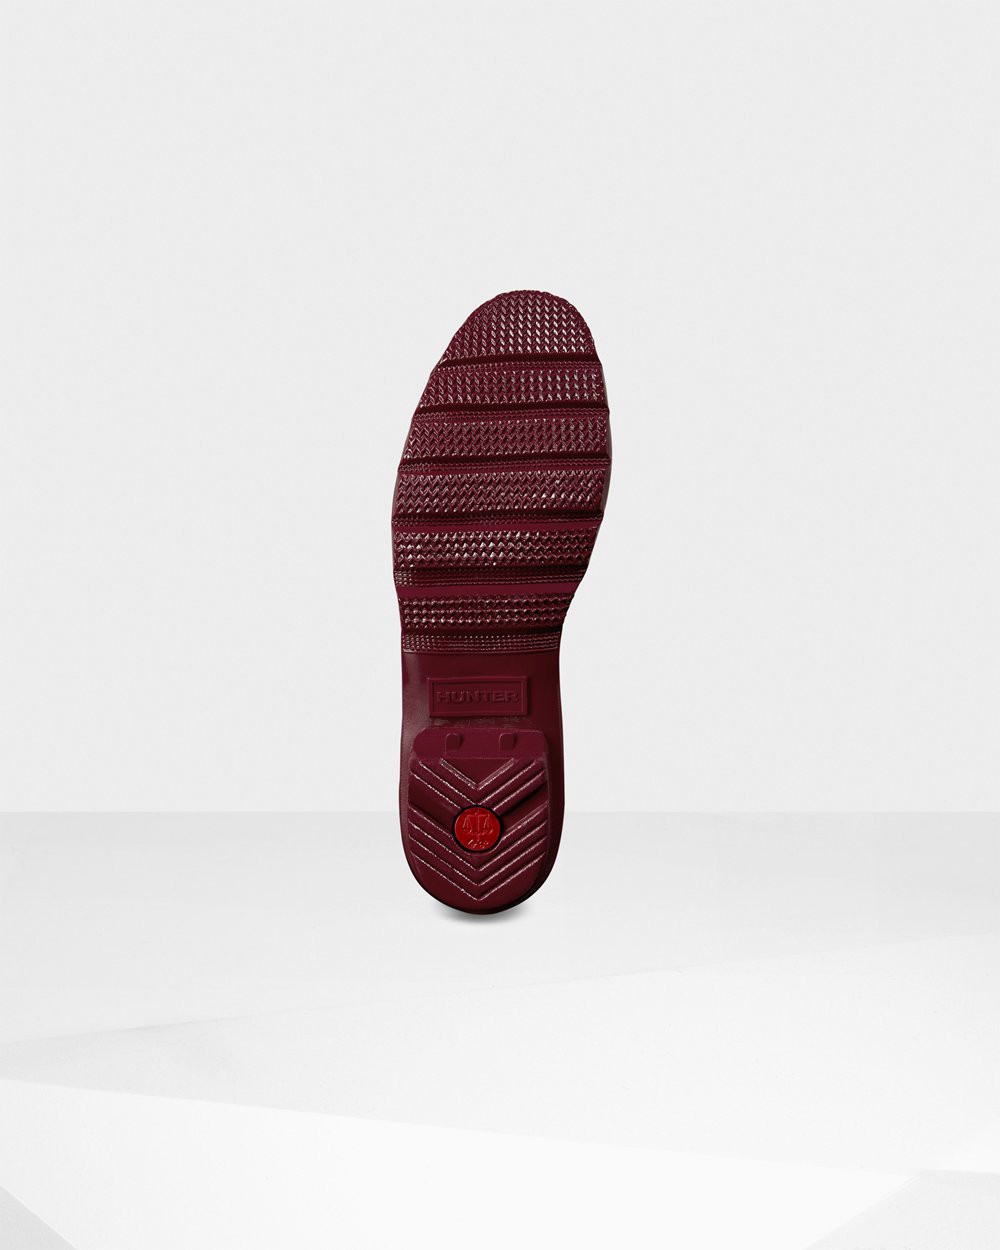 Womens Tall Rain Boots - Hunter Original Gloss (93DCOGWXJ) - Claret/Red